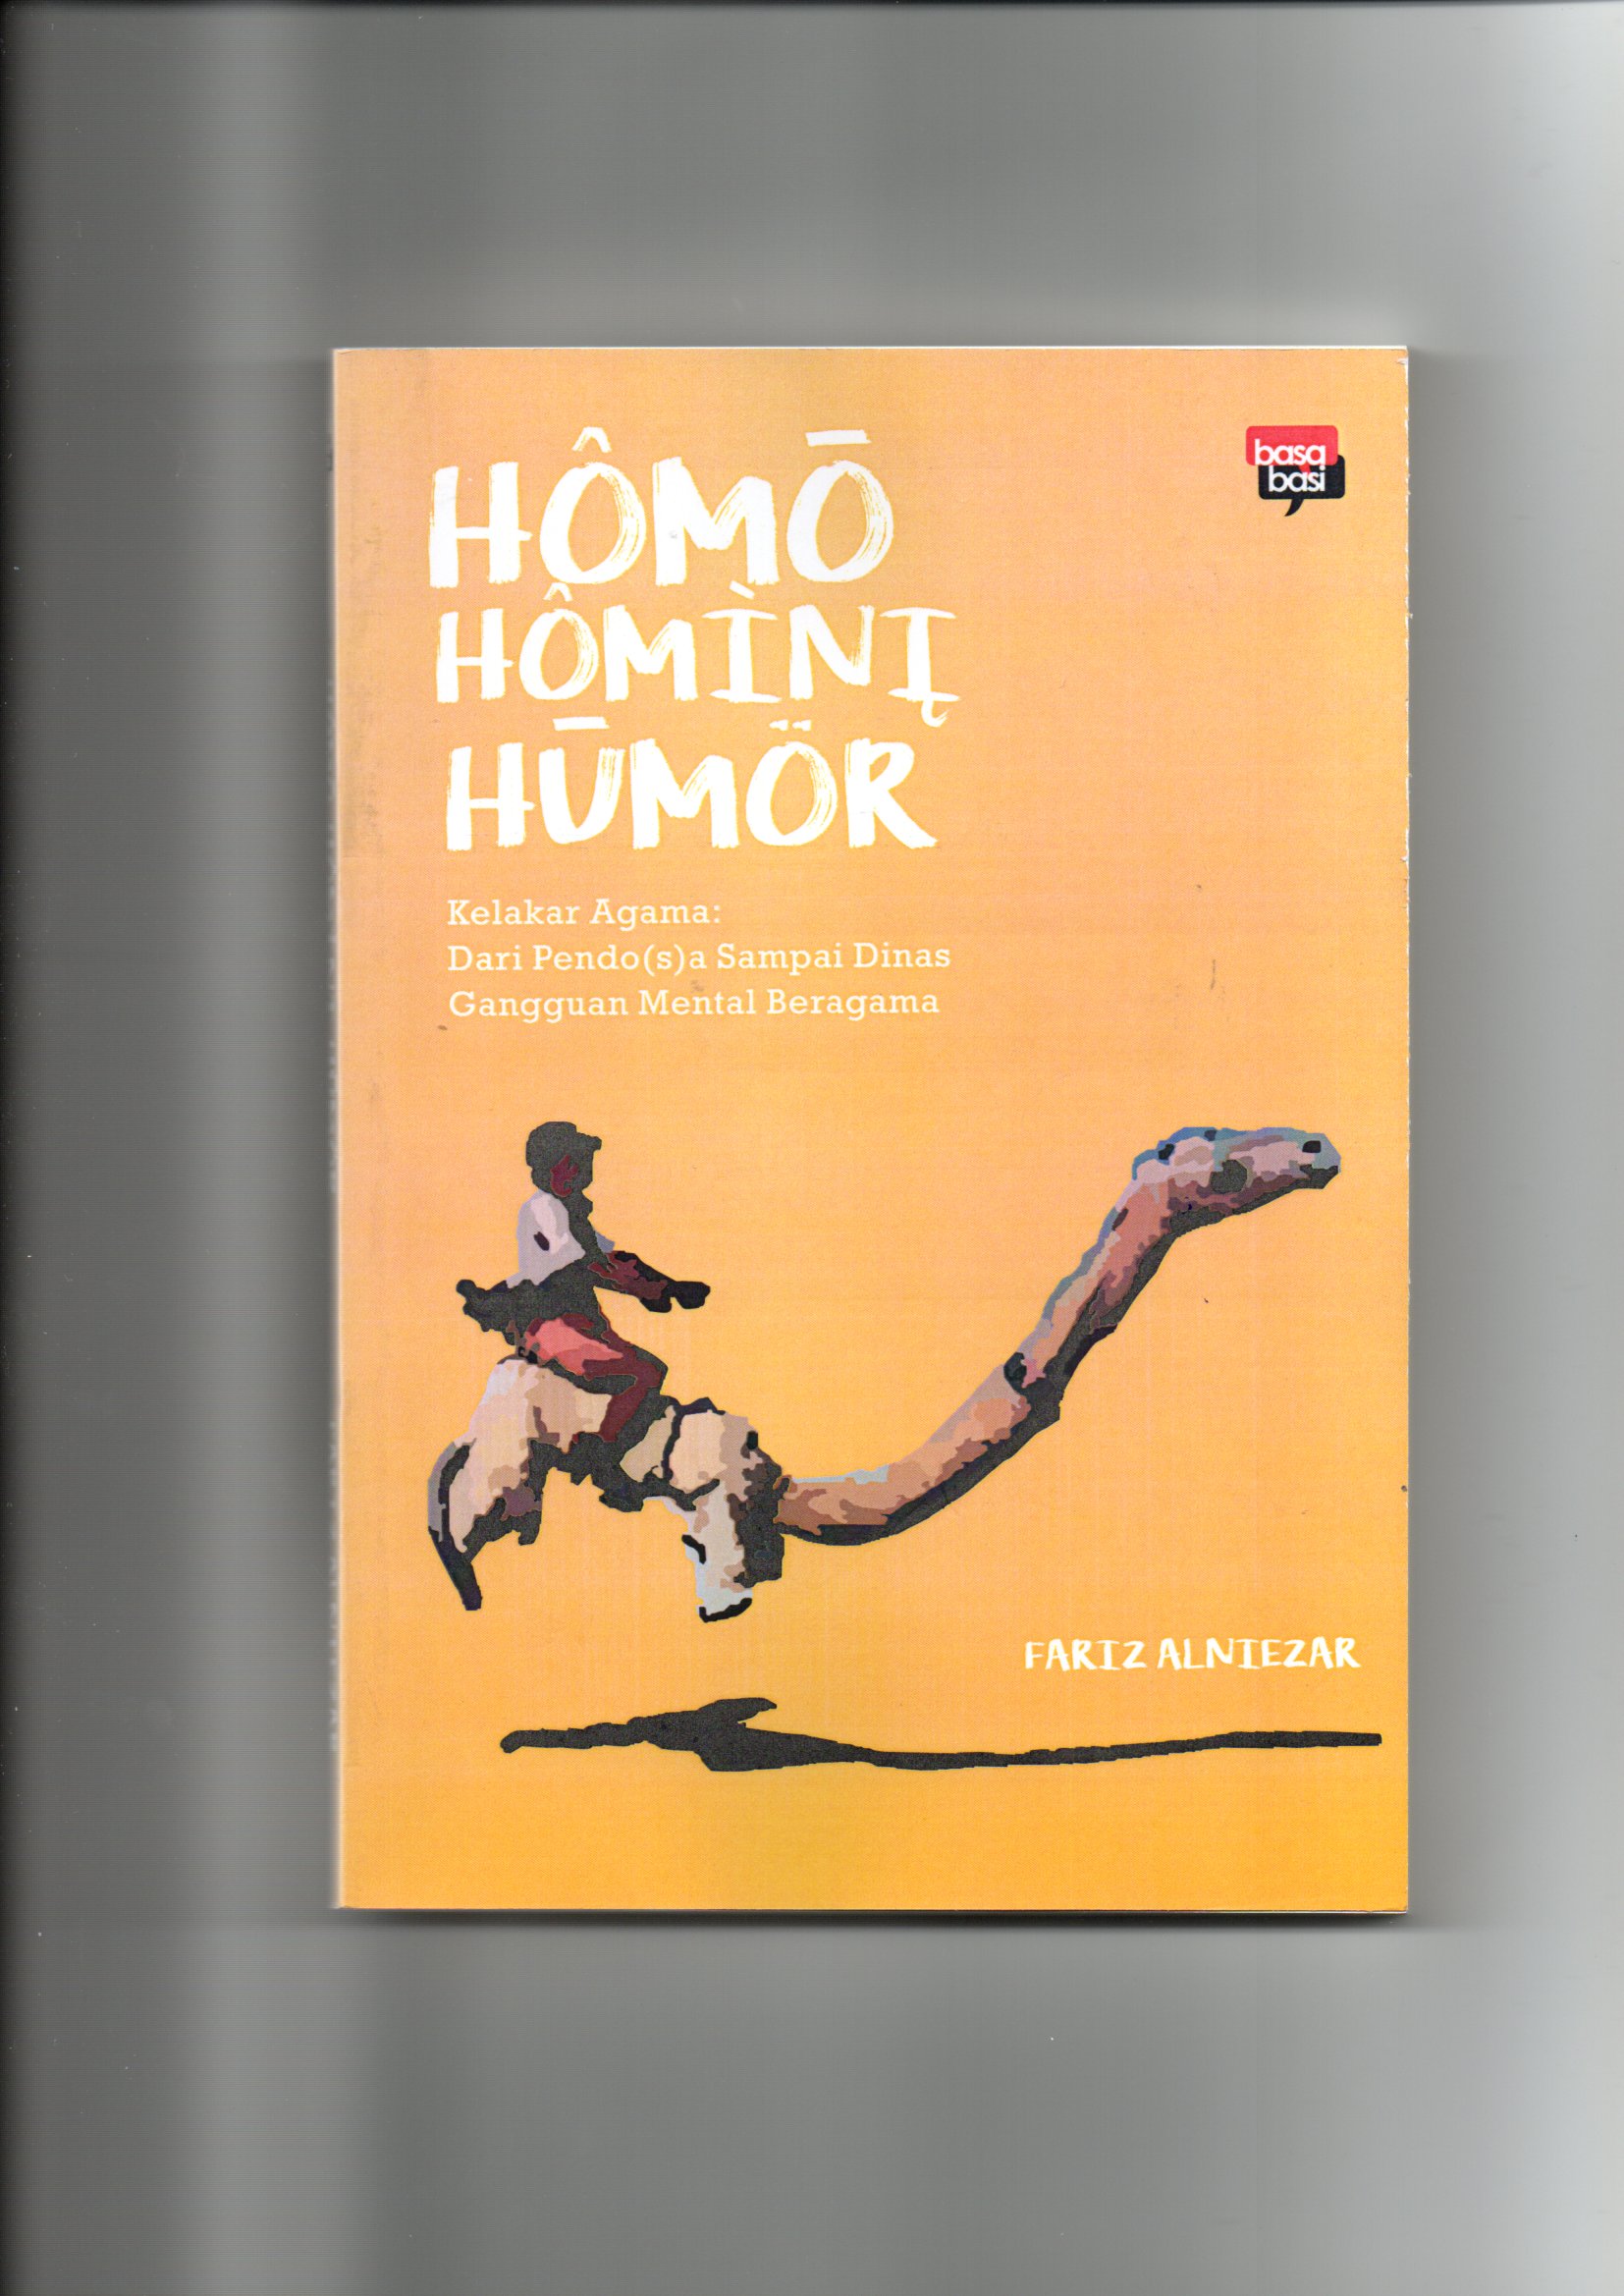 Homo homini humor